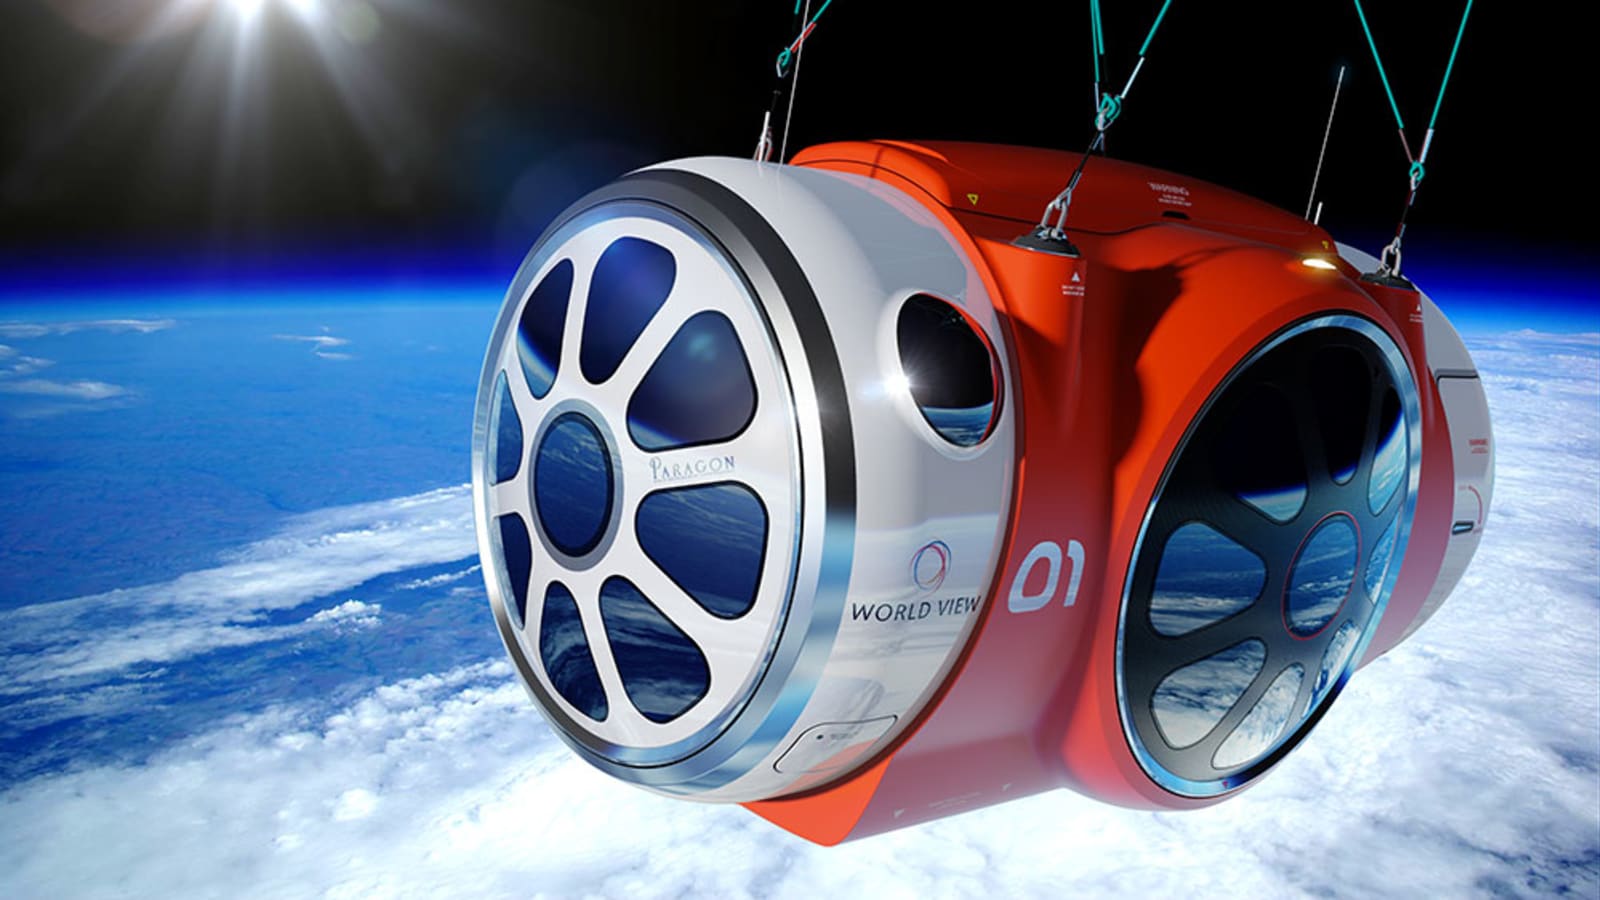 Tour du lịch vũ trụ giảm giá hơn một nửa, khám phá không gian bằng khinh khí cầu chỉ với 1.2 tỷ - Ảnh 1